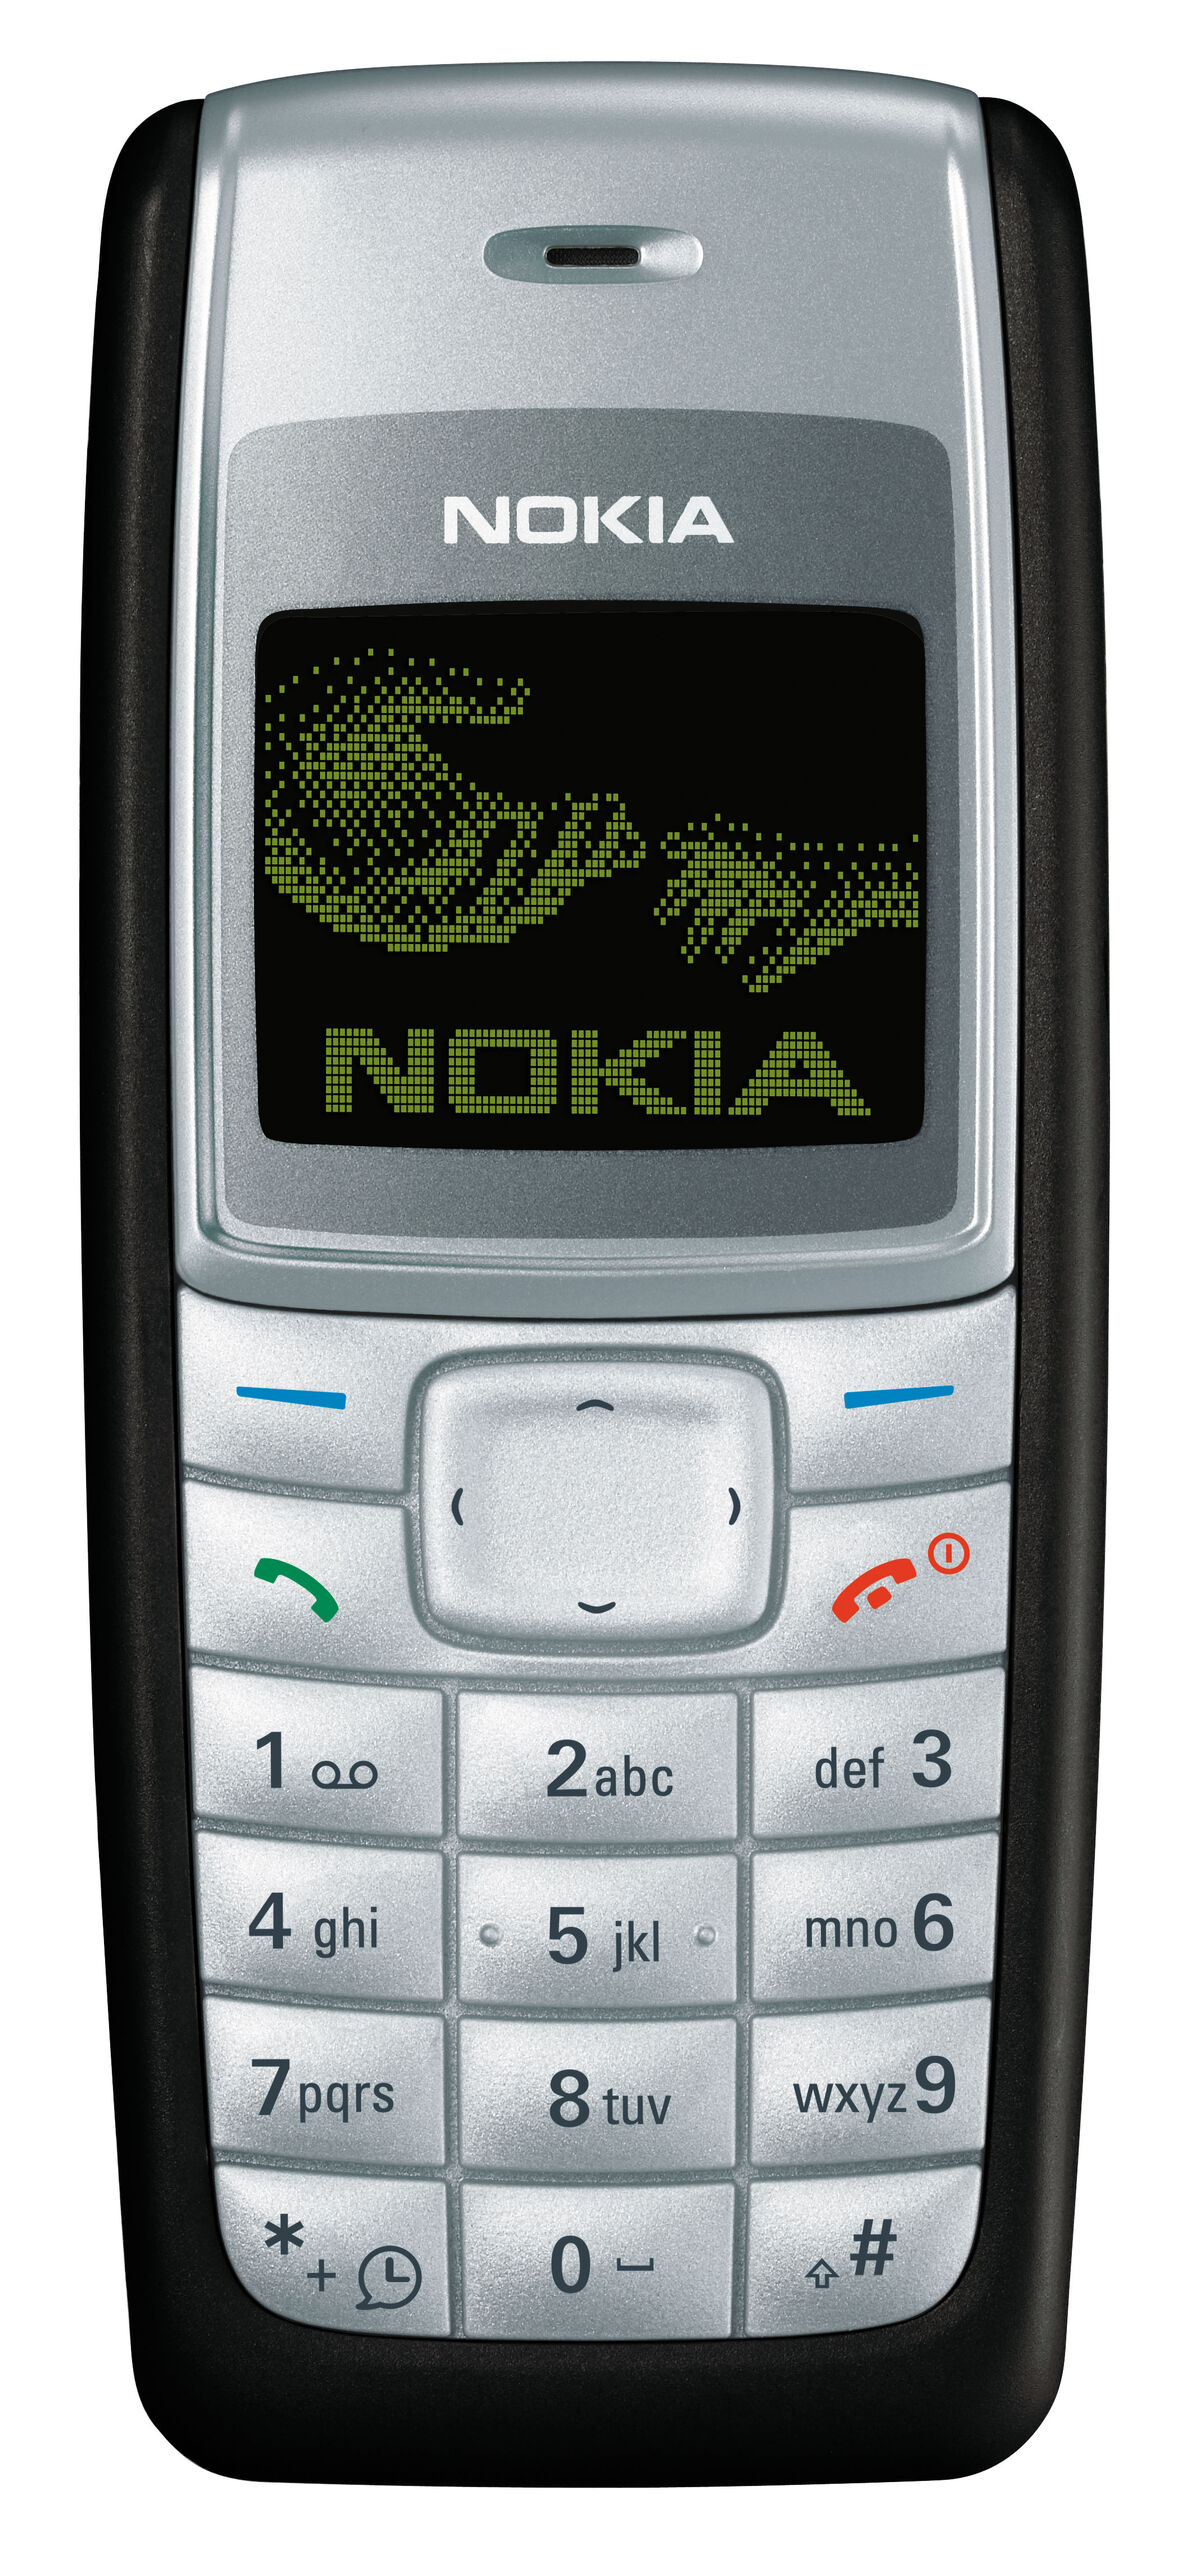 Nokia 5110 - Wikipedia